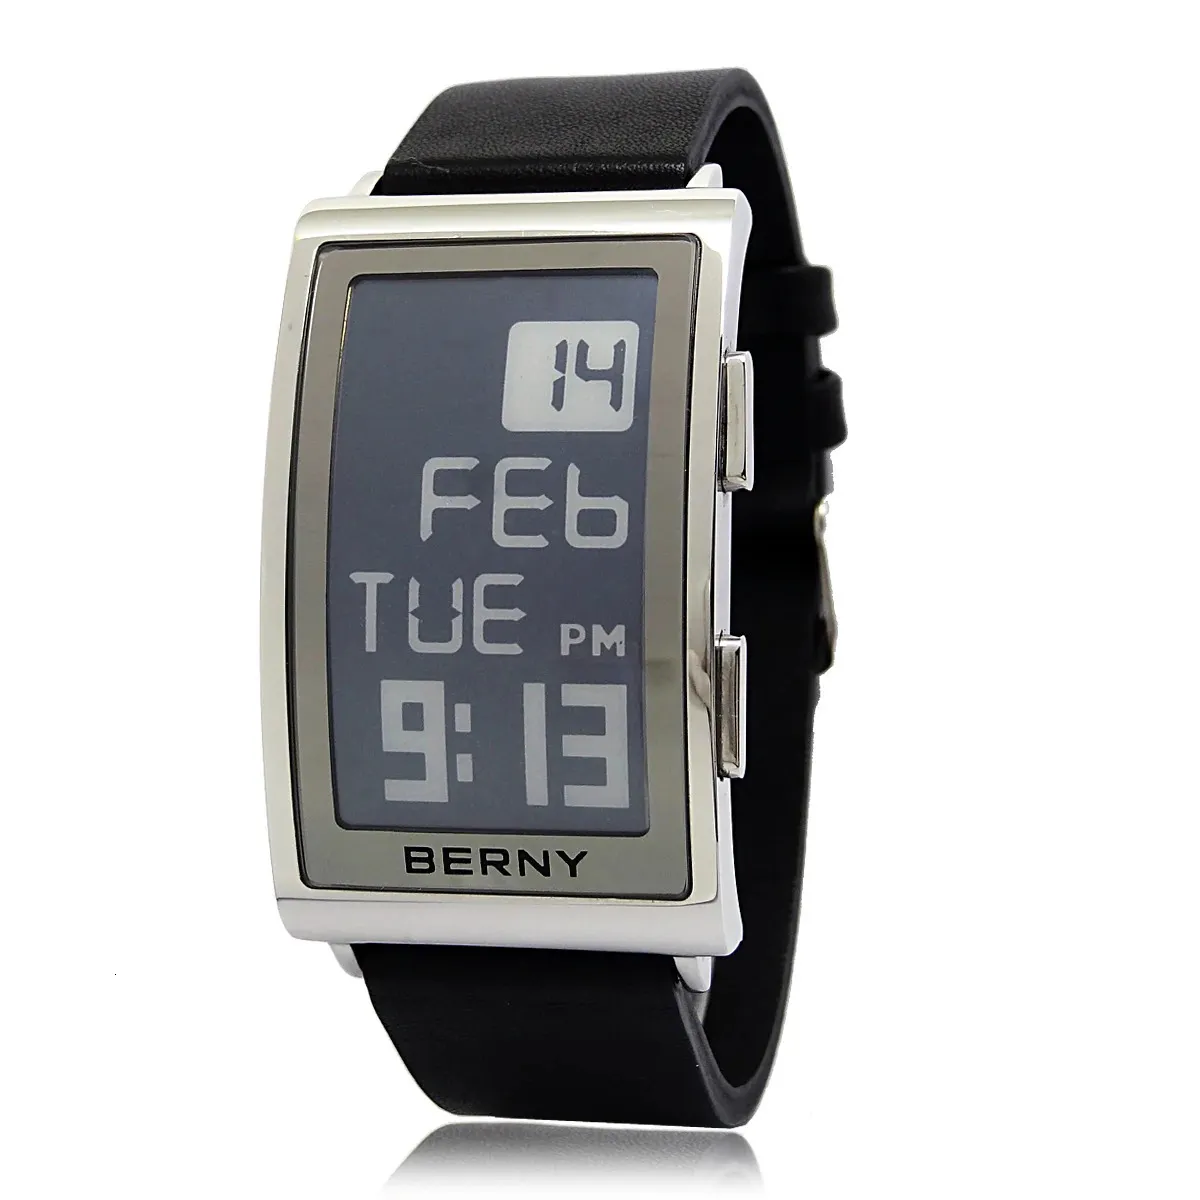 Berny Electronic Digital Watch For Men Fitness Ink Зачатые часы 3ATM Водонепроницаемые мужчины спортивные часы из нержавеющей стали Кожаный ремешок 240428